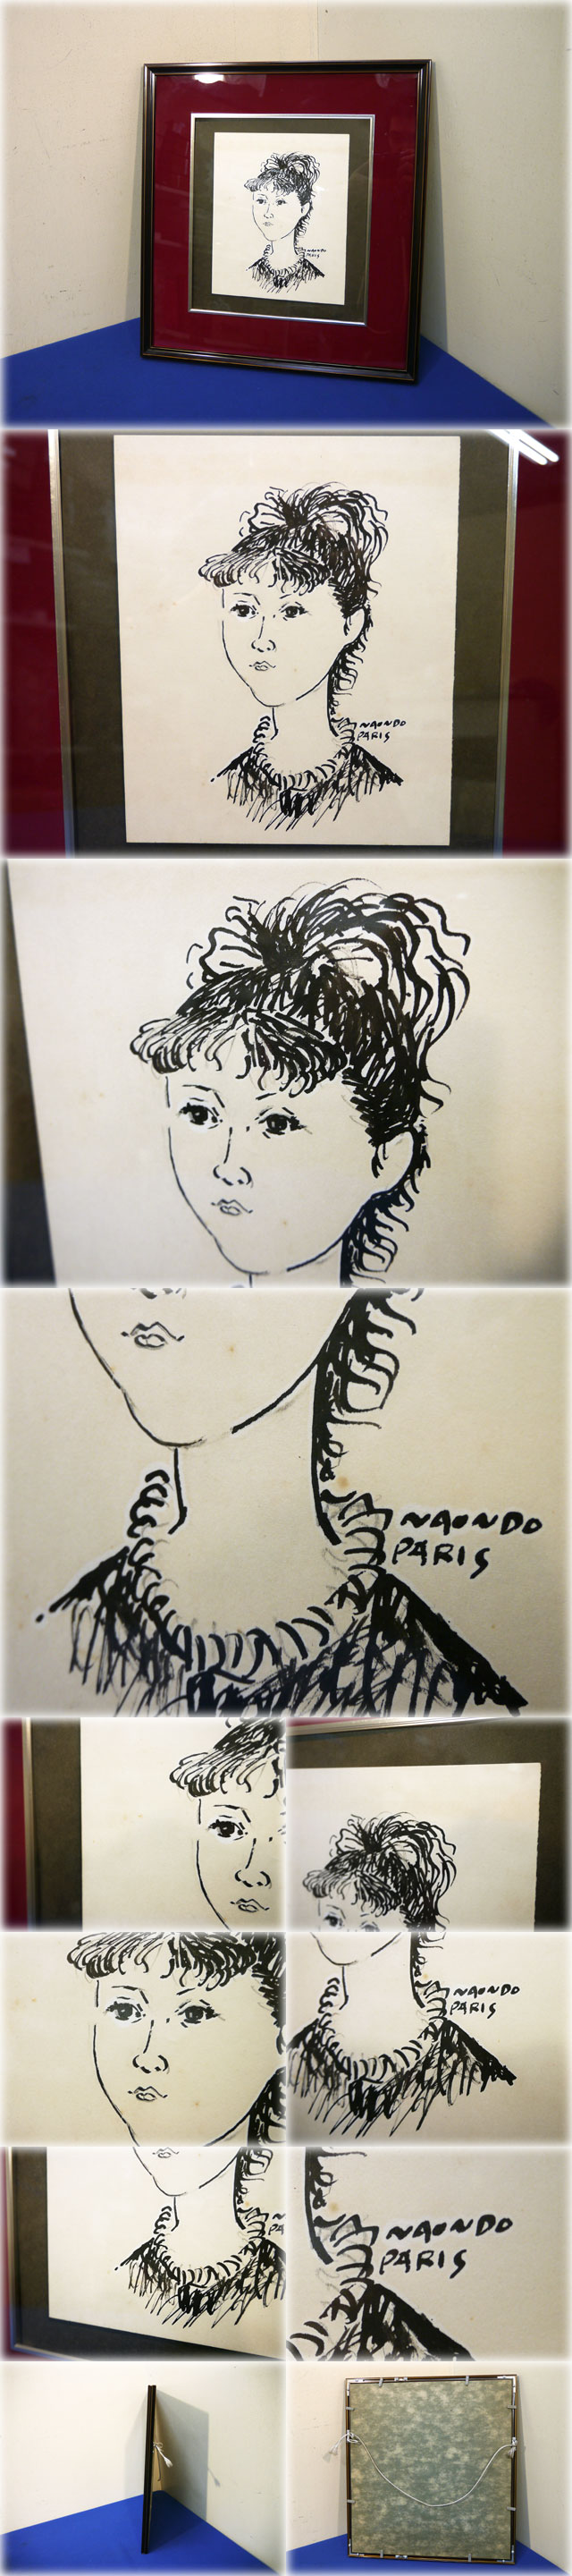 格安最新品中村直人 ペン画 (婦人画) サイン有 NAONDO PARIS 二科会会員 洋画家 彫刻家 物故作家 人物画